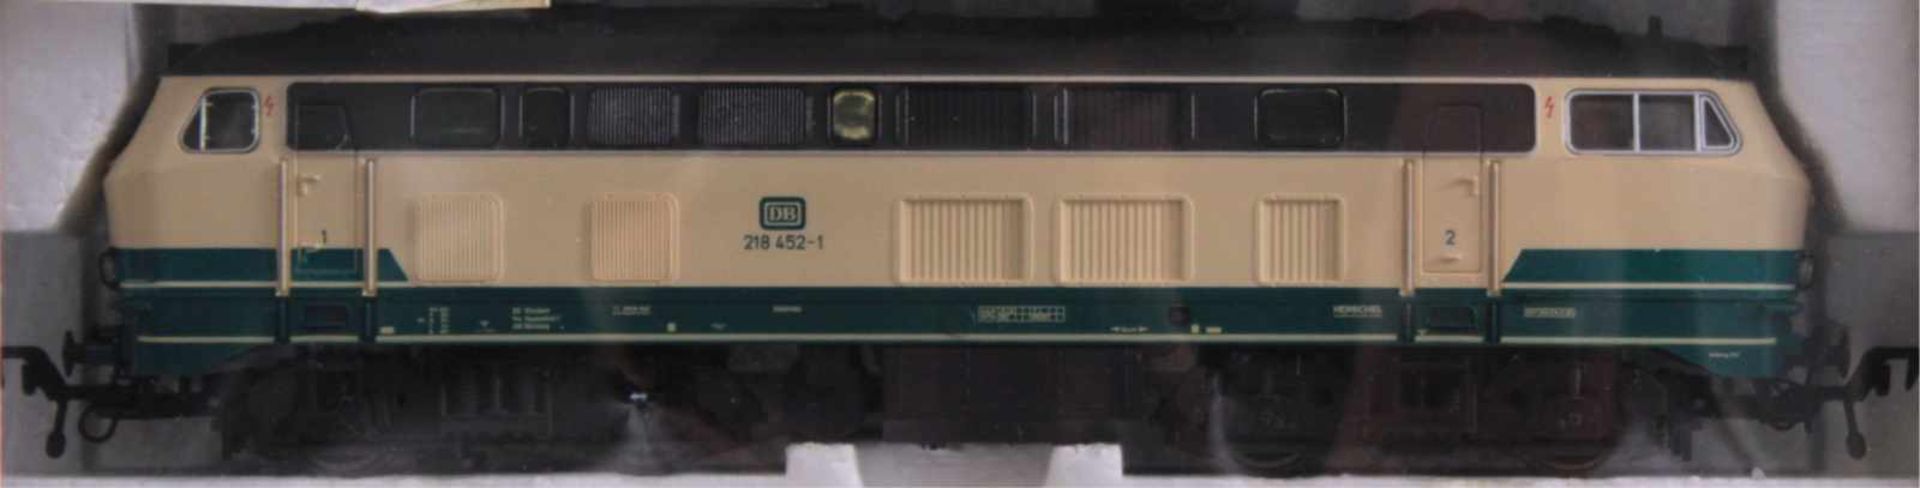 Fleischmann Diesel-Lok 4223 Spur H0 und 6 GüterwaggonsUnbespielt und in der Originalverpackung, - Image 2 of 2